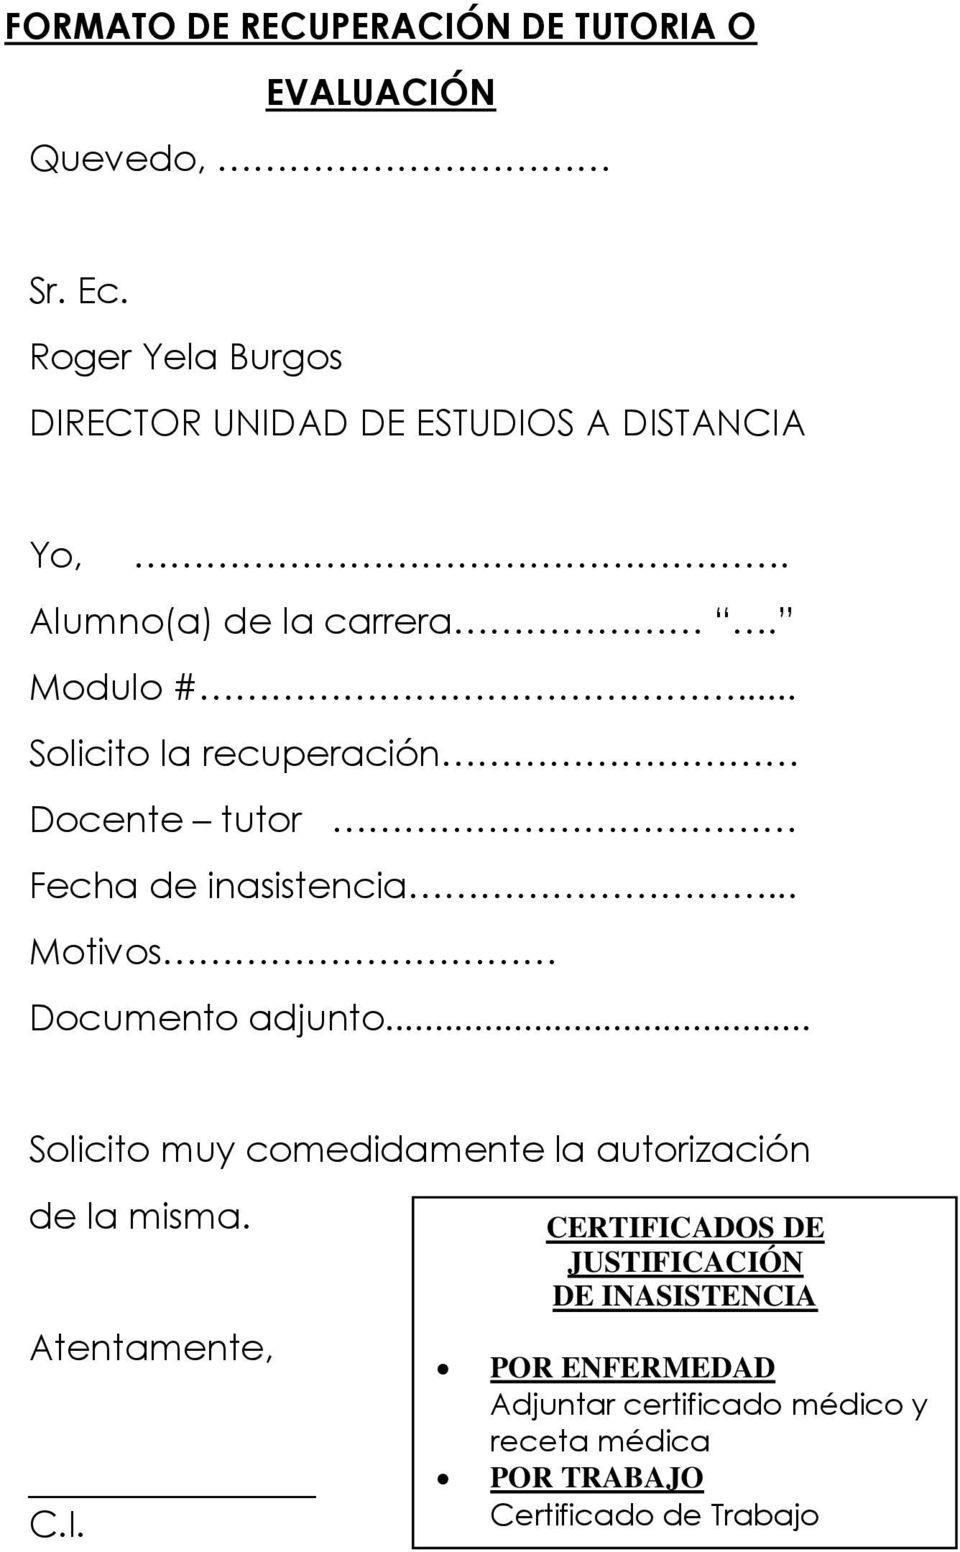 FORMATO DE SOLICITUD PARA JEFES DEPARTAMENTALES - PDF Free Download